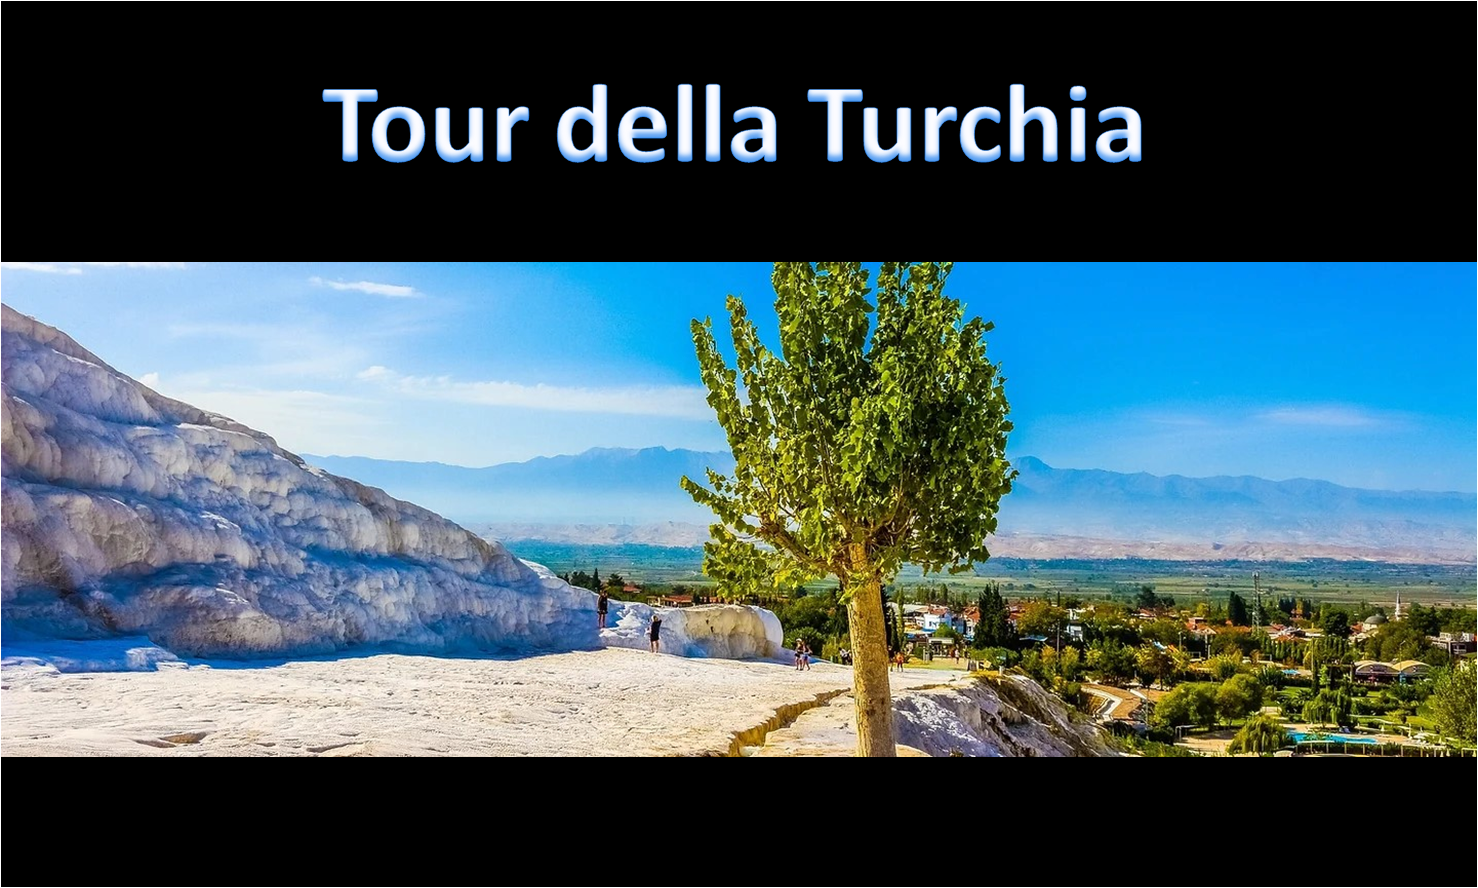 TOUR DELLA TURCHIA